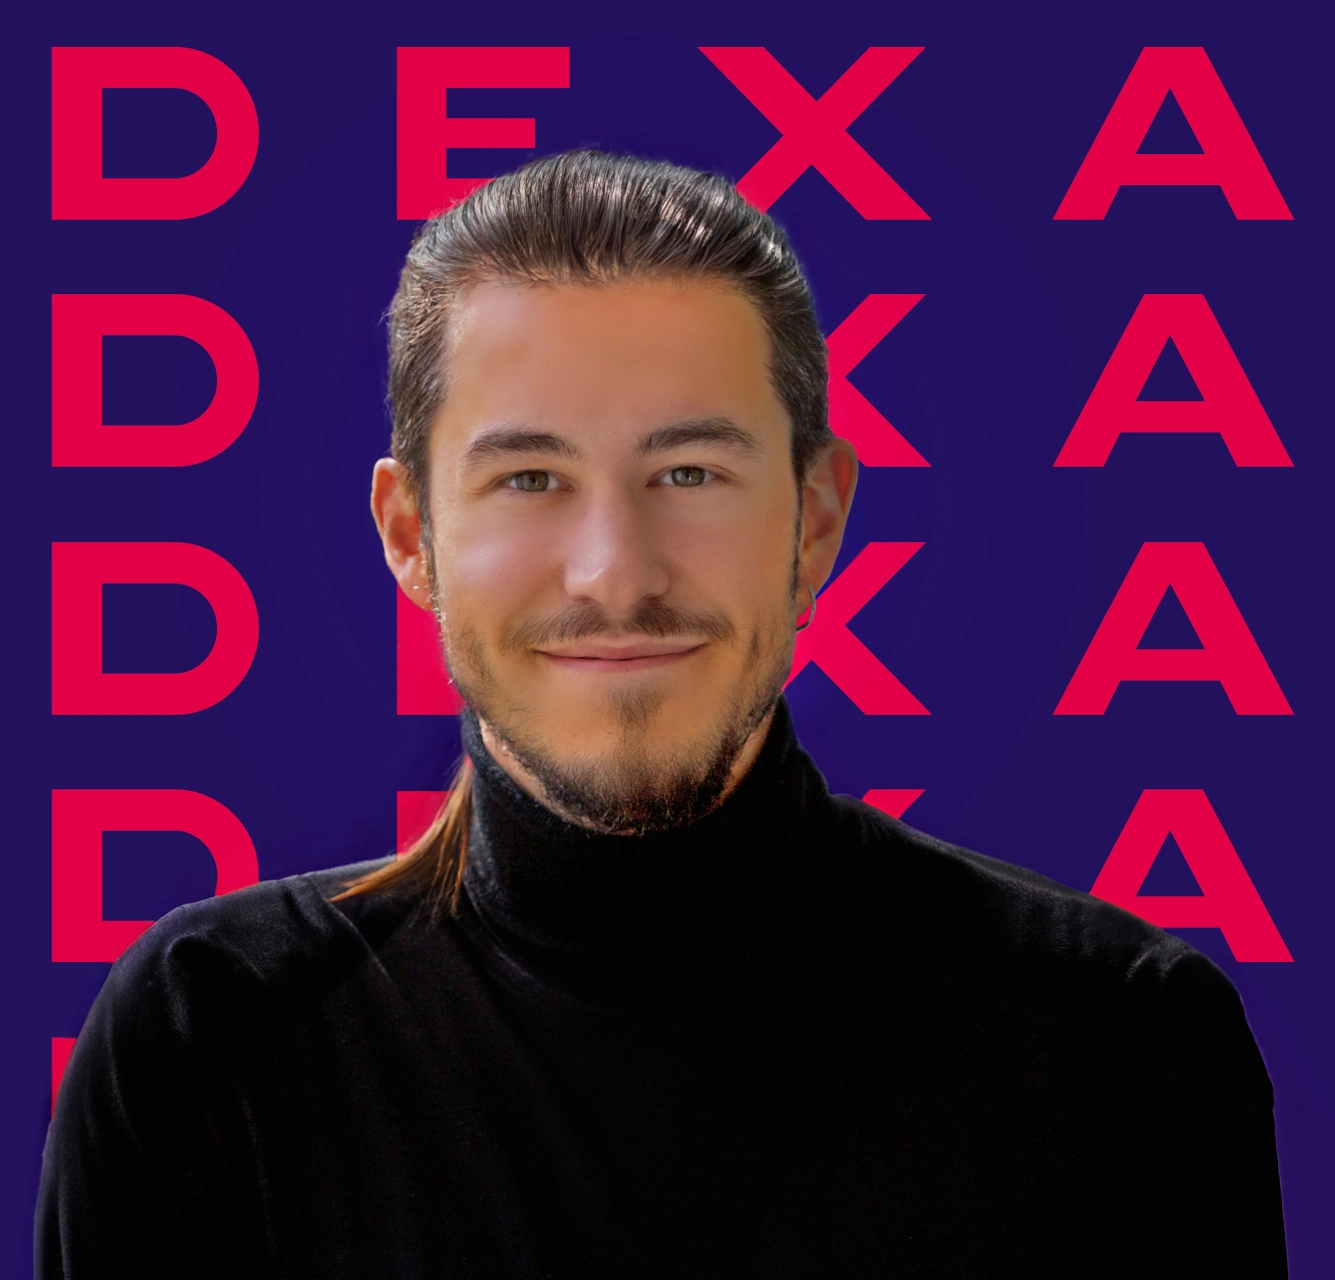 Matteo Paccagnella Graphic & Web Designer - Dexa